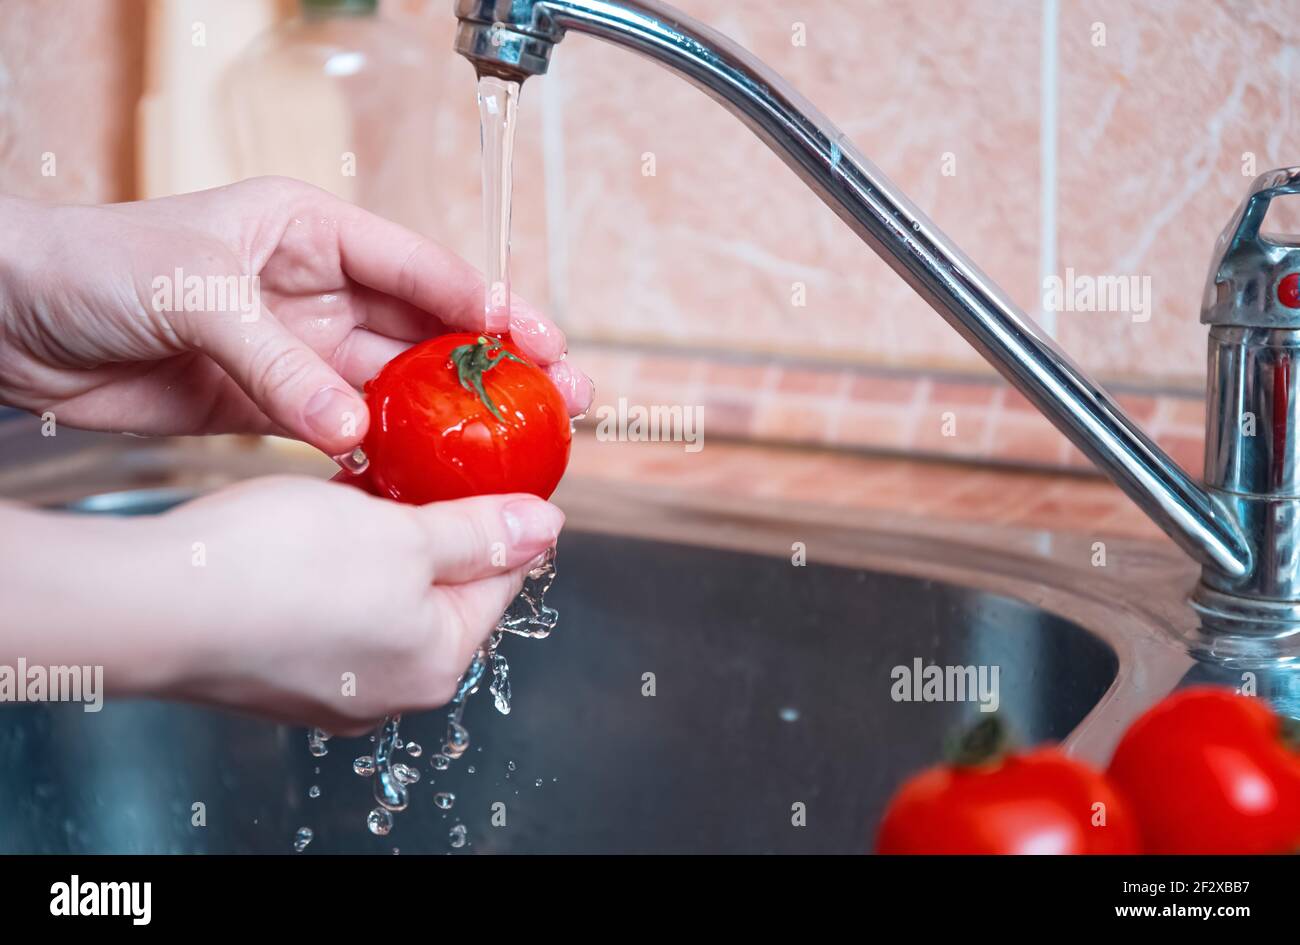 lavado de verduras. Las mujeres lavan las verduras en las manos antes de cocinarlas bajo el agua corriente. Higiene personal Foto de stock